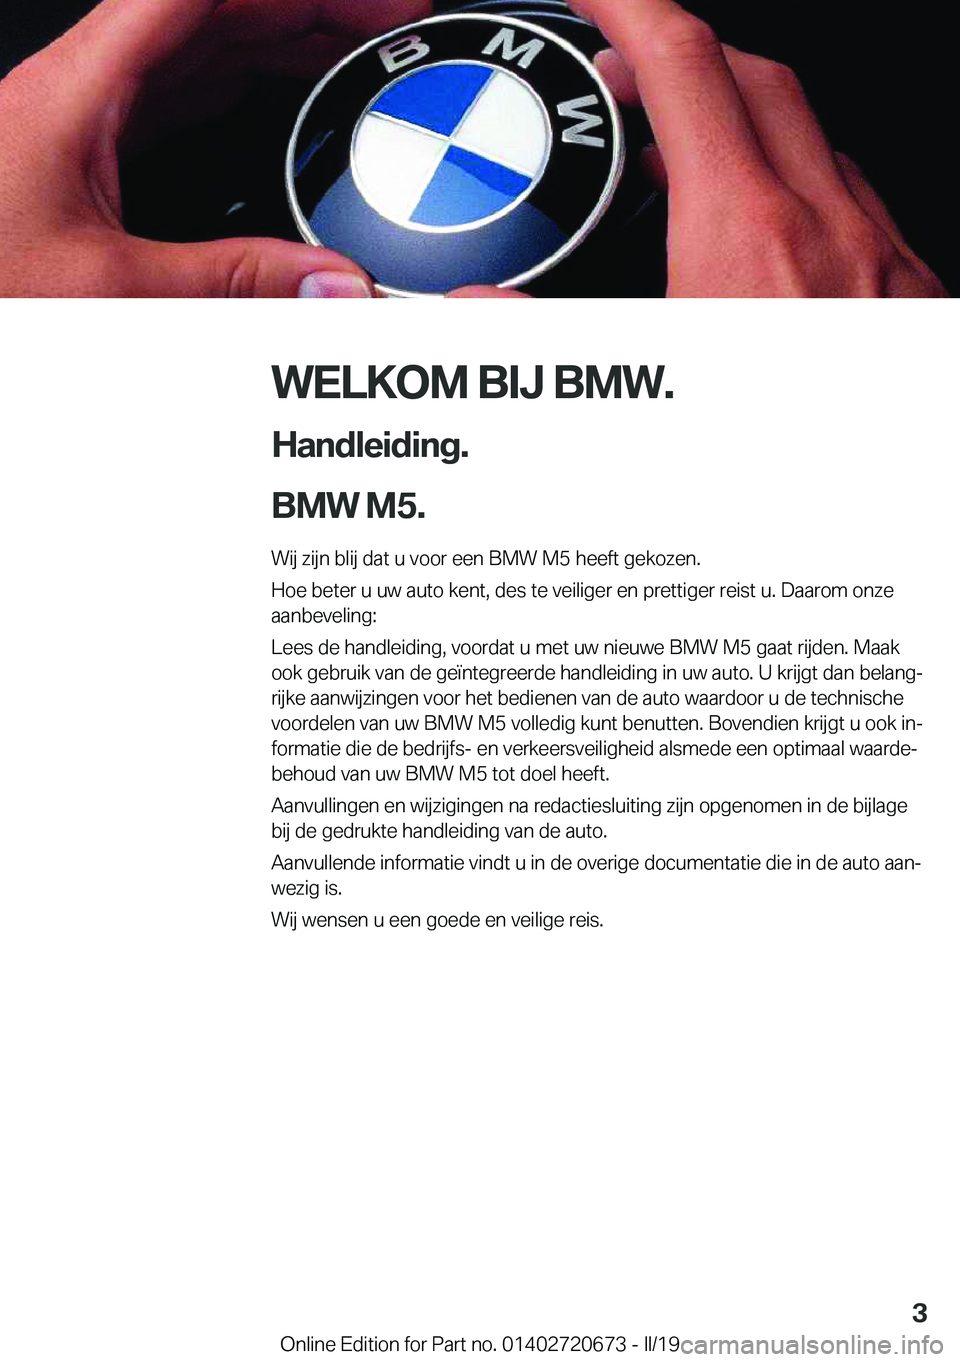 BMW M5 2019  Instructieboekjes (in Dutch) �W�E�L�K�O�M��B�I�J��B�M�W�.
�H�a�n�d�l�e�i�d�i�n�g�.
�B�M�W��M�5�. �W�i�j��z�i�j�n��b�l�i�j��d�a�t��u��v�o�o�r��e�e�n��B�M�W��M�5��h�e�e�f�t��g�e�k�o�z�e�n�.
�H�o�e��b�e�t�e�r��u��u�w